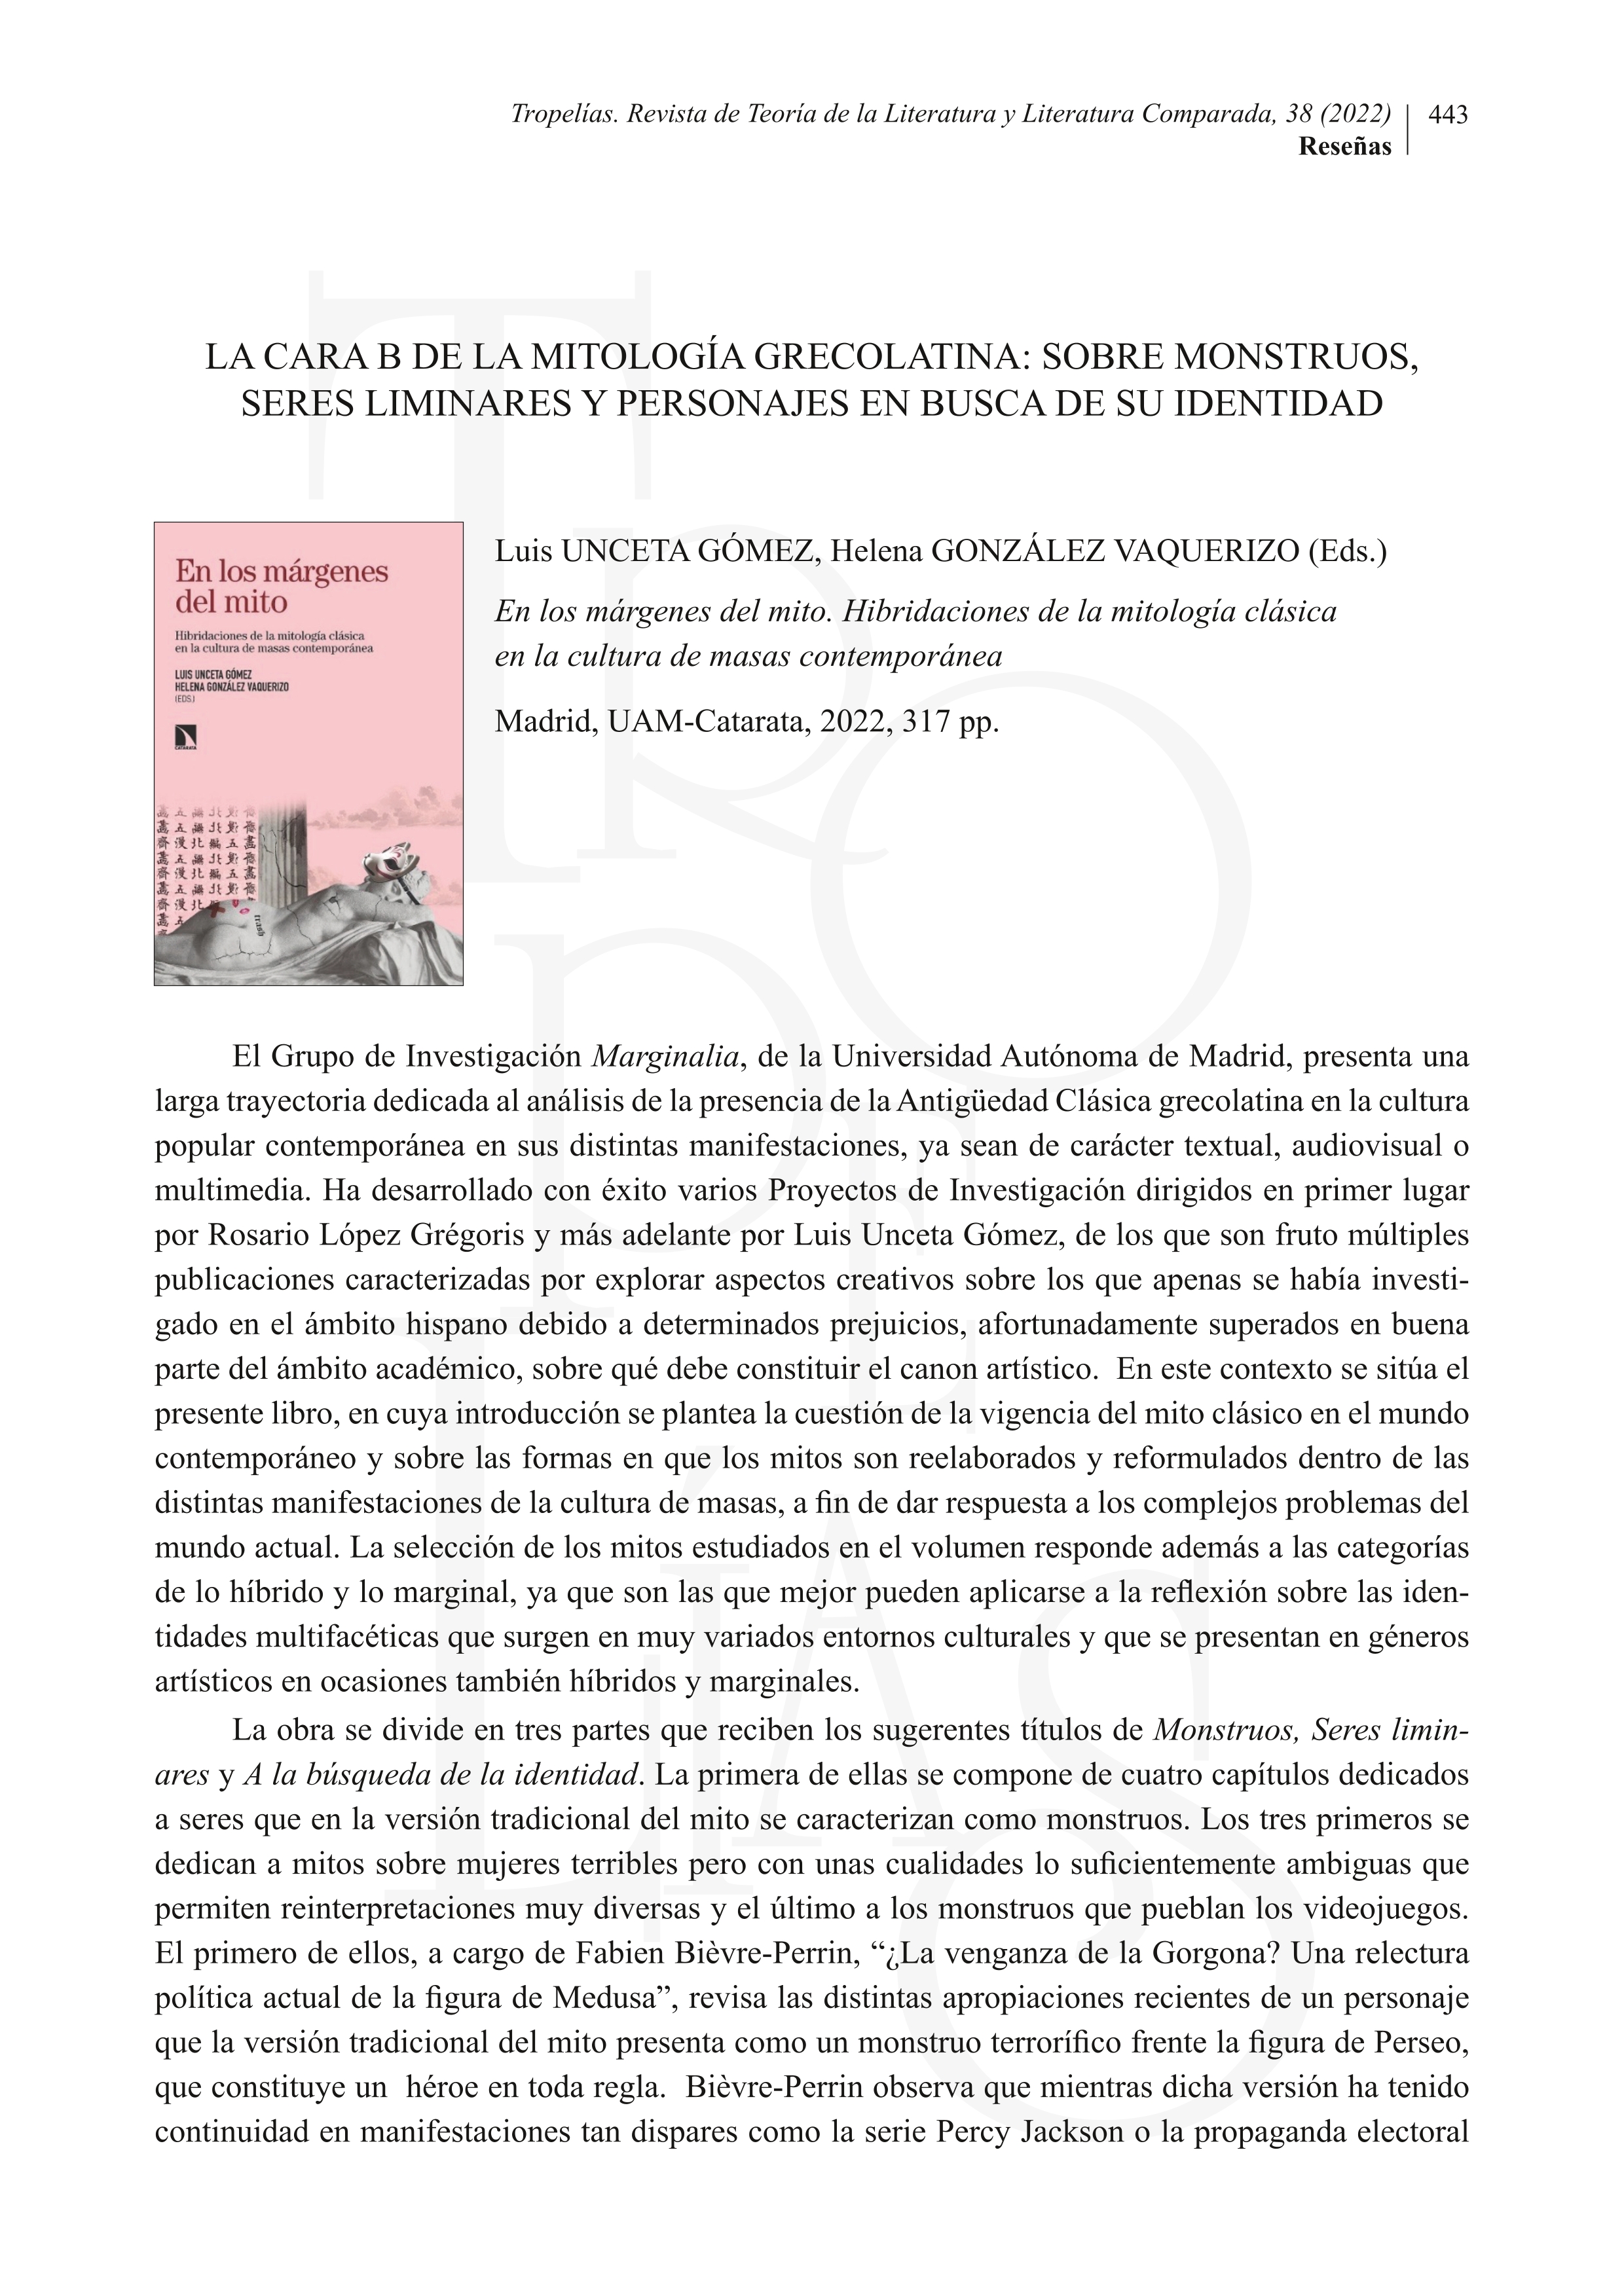 Luis Unceta Gómez, Helena González Vaquerizo, eds., en los márgenes del mito. hibridaciones de la mitología clásica en la cultura de masas contemporánea